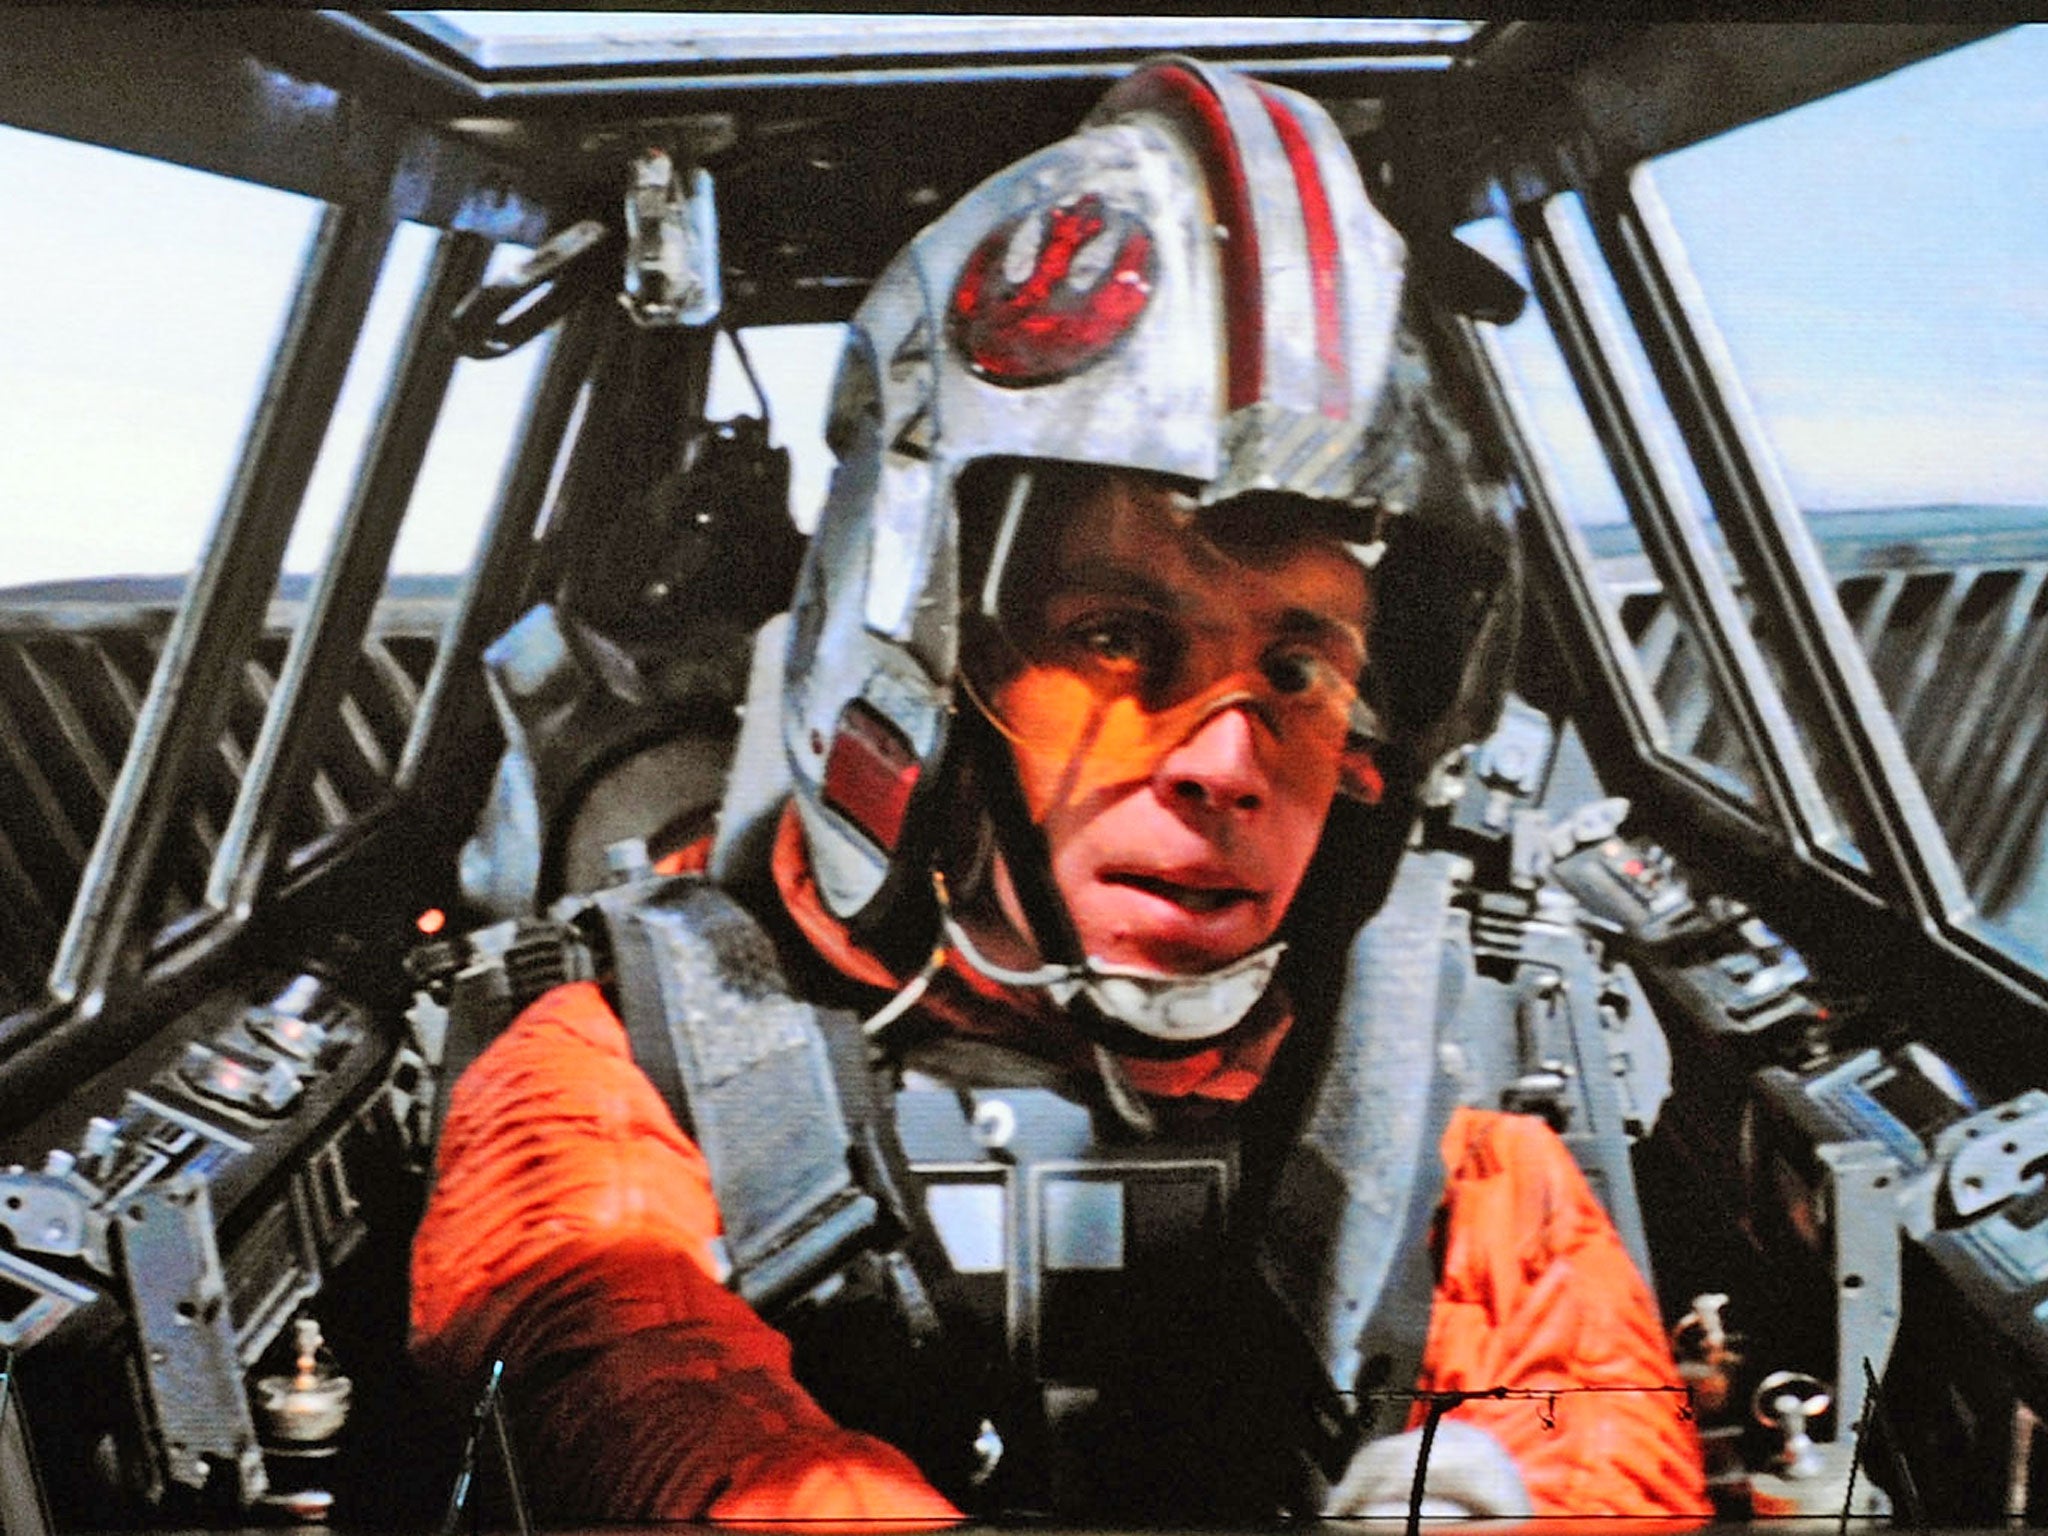 Luke Skywalker character from 'Star Wars Episode V: The Empire Strikes Back